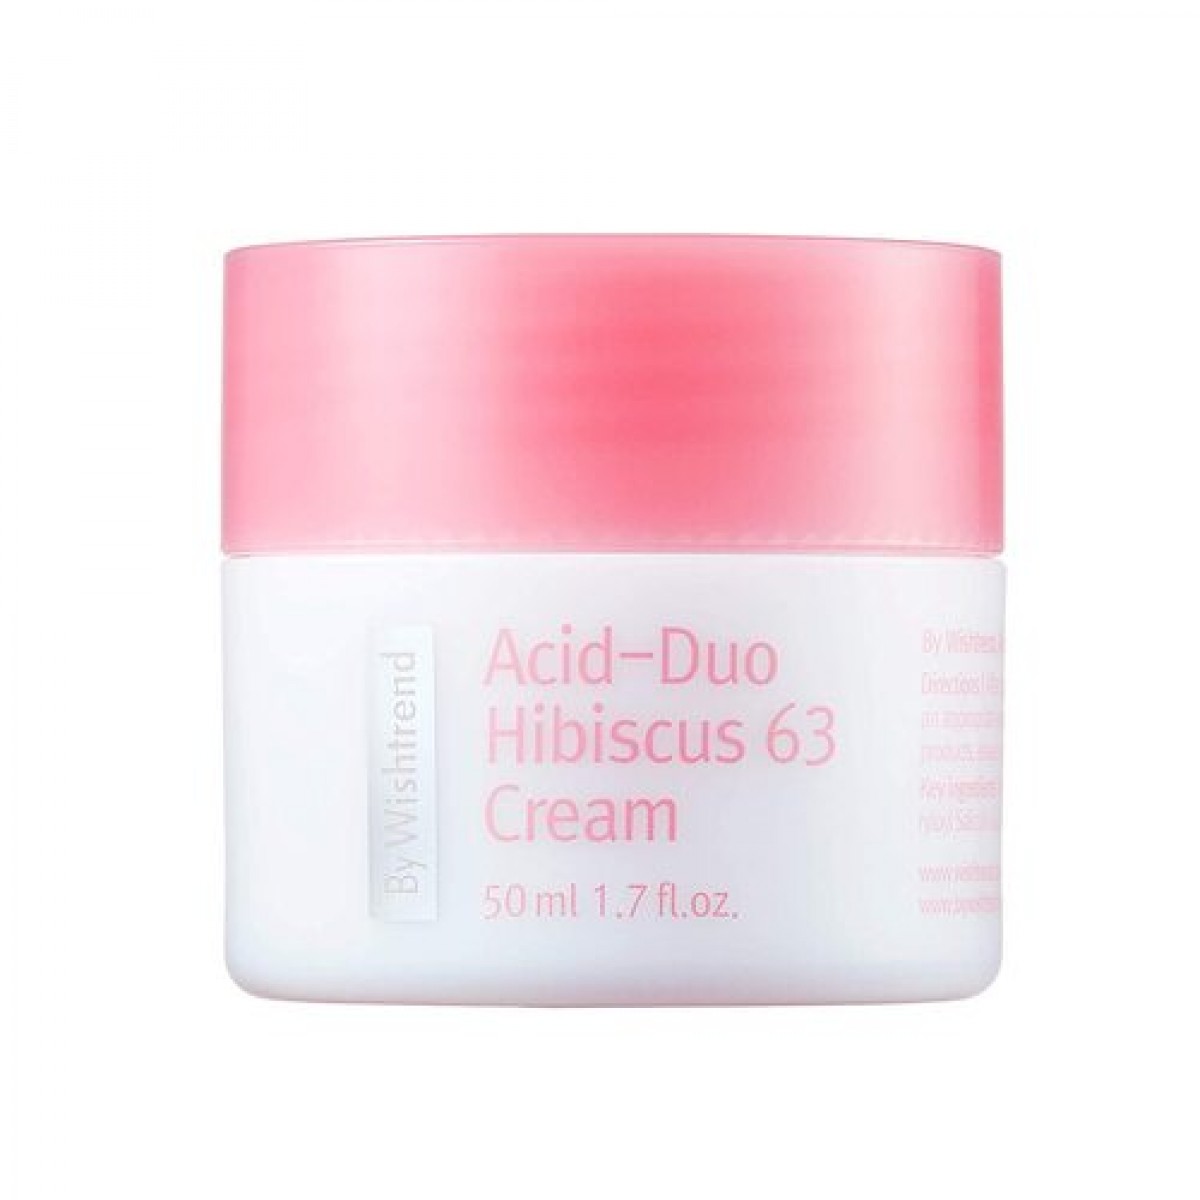 Крем для лица антиоксидантный с LHA-кислотой - By Wishtrend Acid-duo hibiscus 63 cream